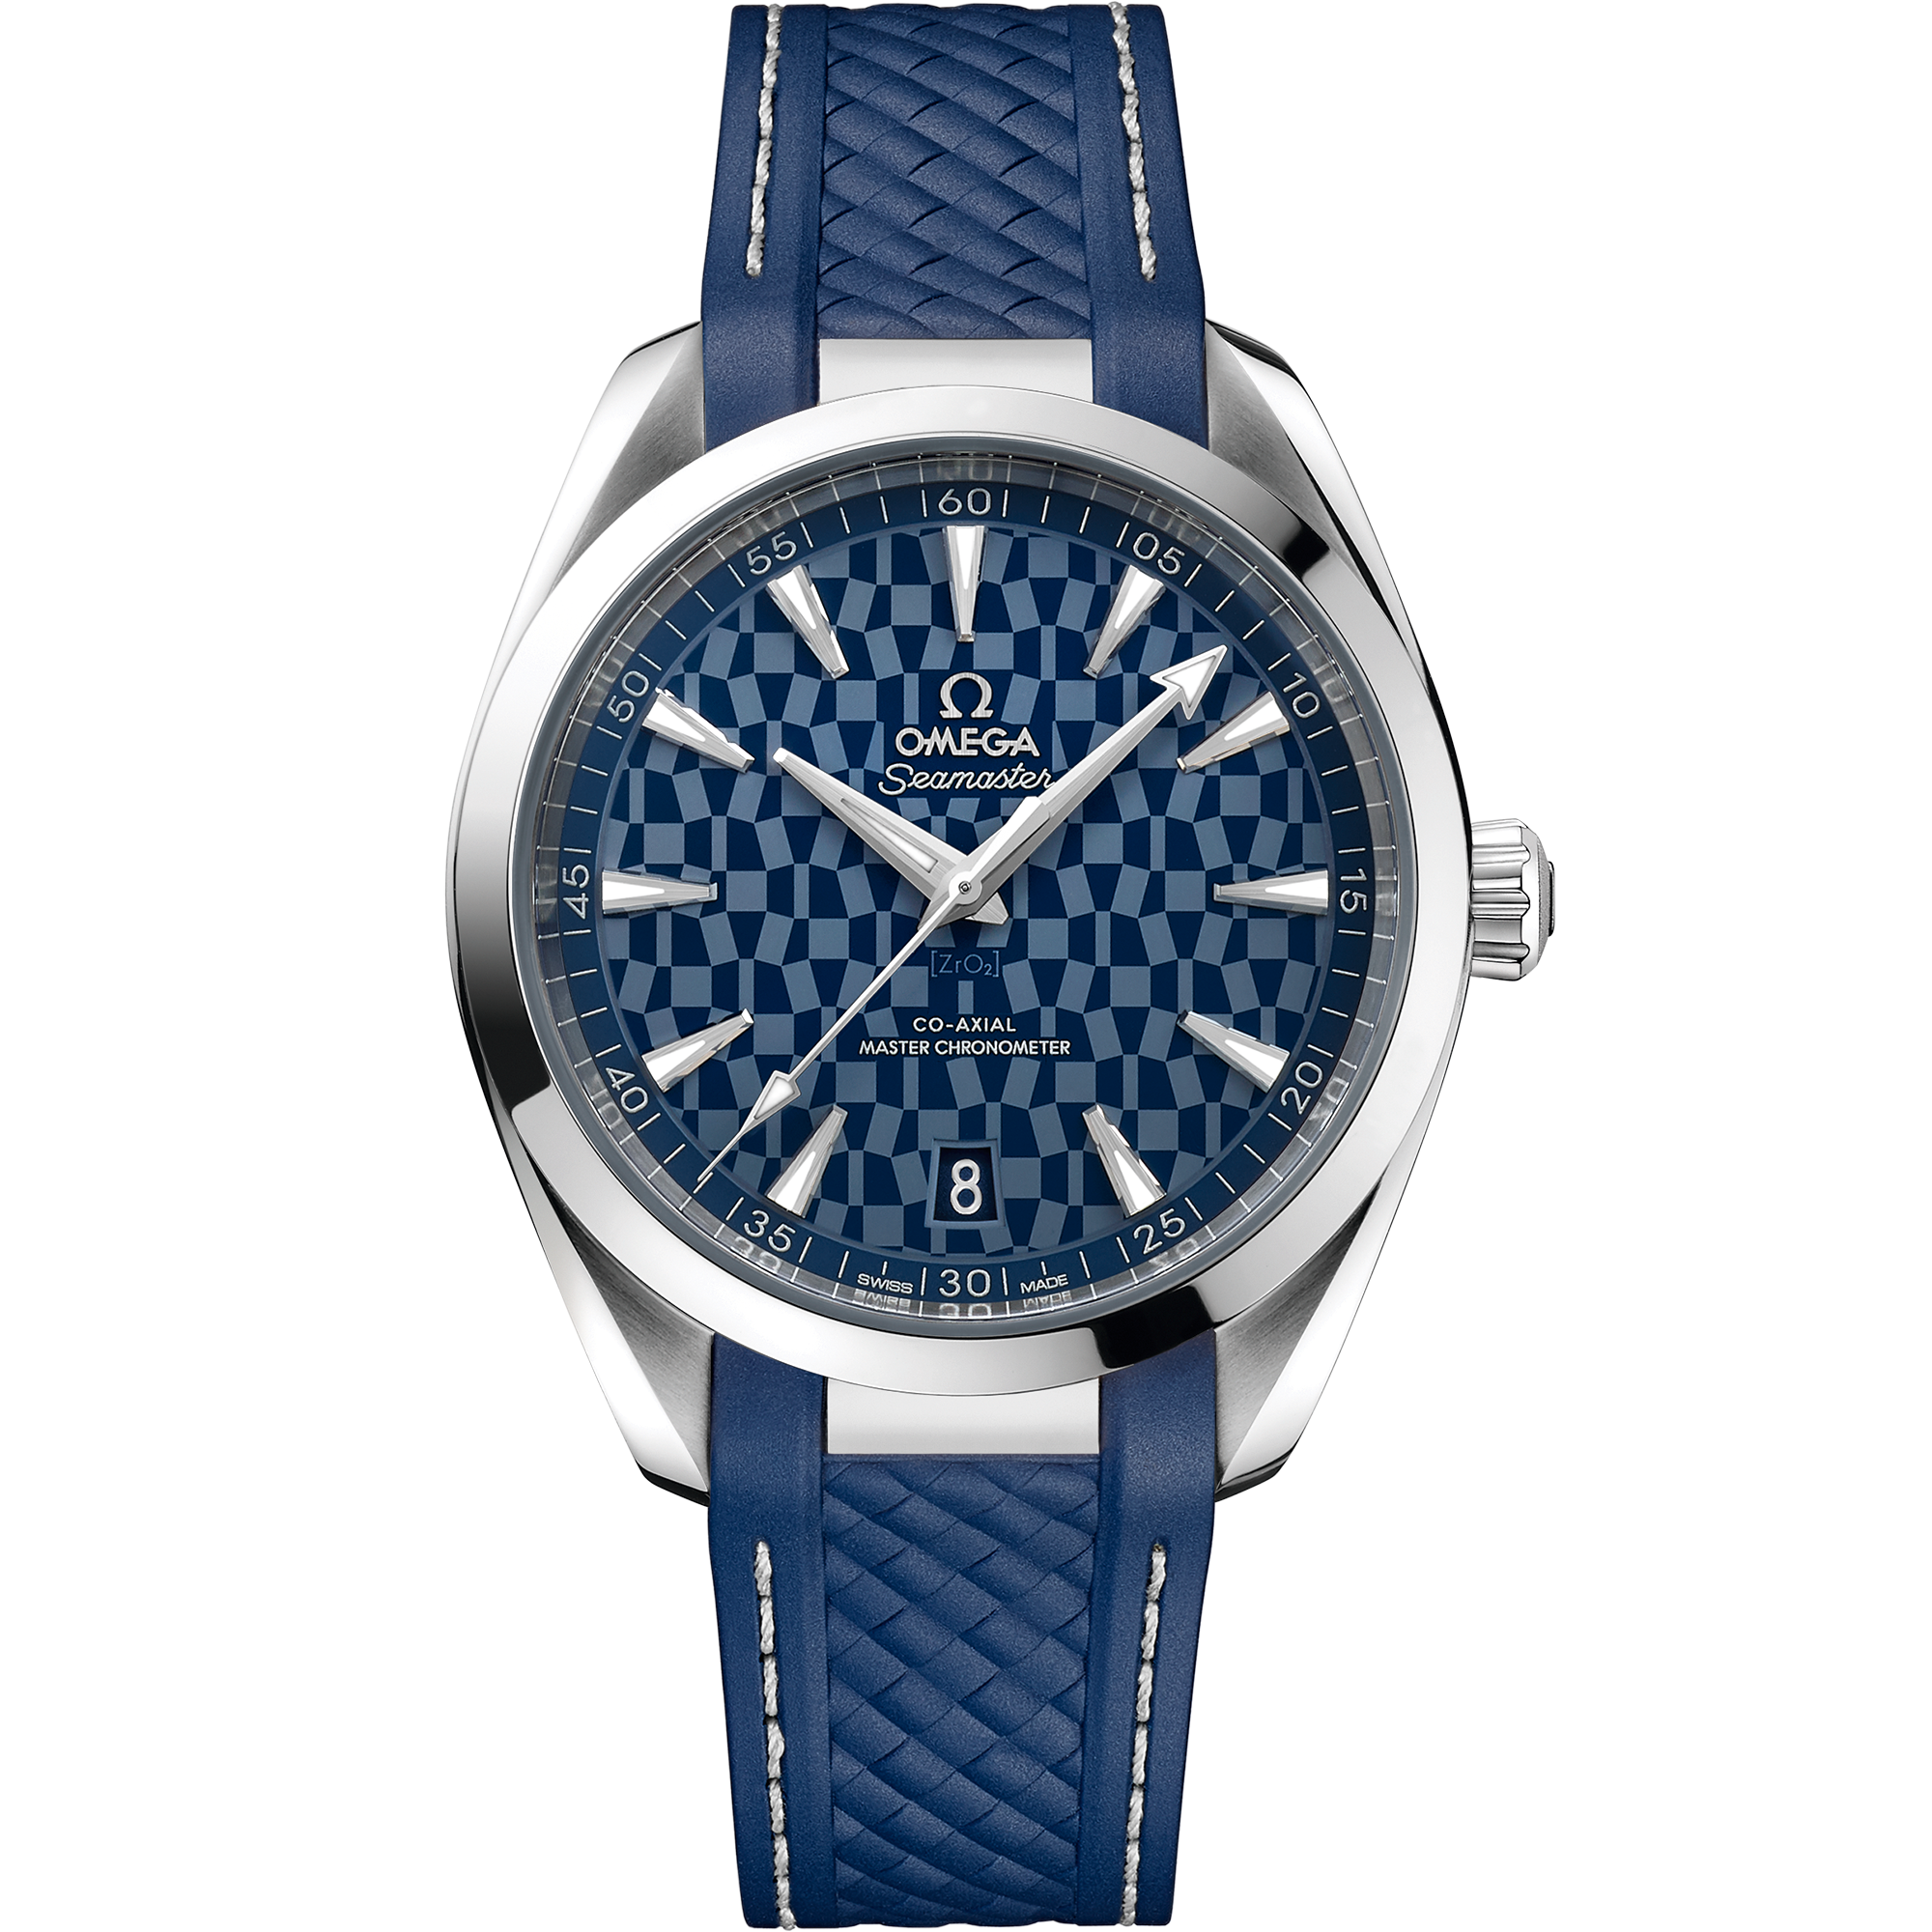 Uhr mit Blau Zifferblatt auf Stahl Gehäuse mit Kautschukband bracelet - Seamaster Aqua Terra 150 M 41 mm, Stahl mit Kautschukband - 522.12.41.21.03.001